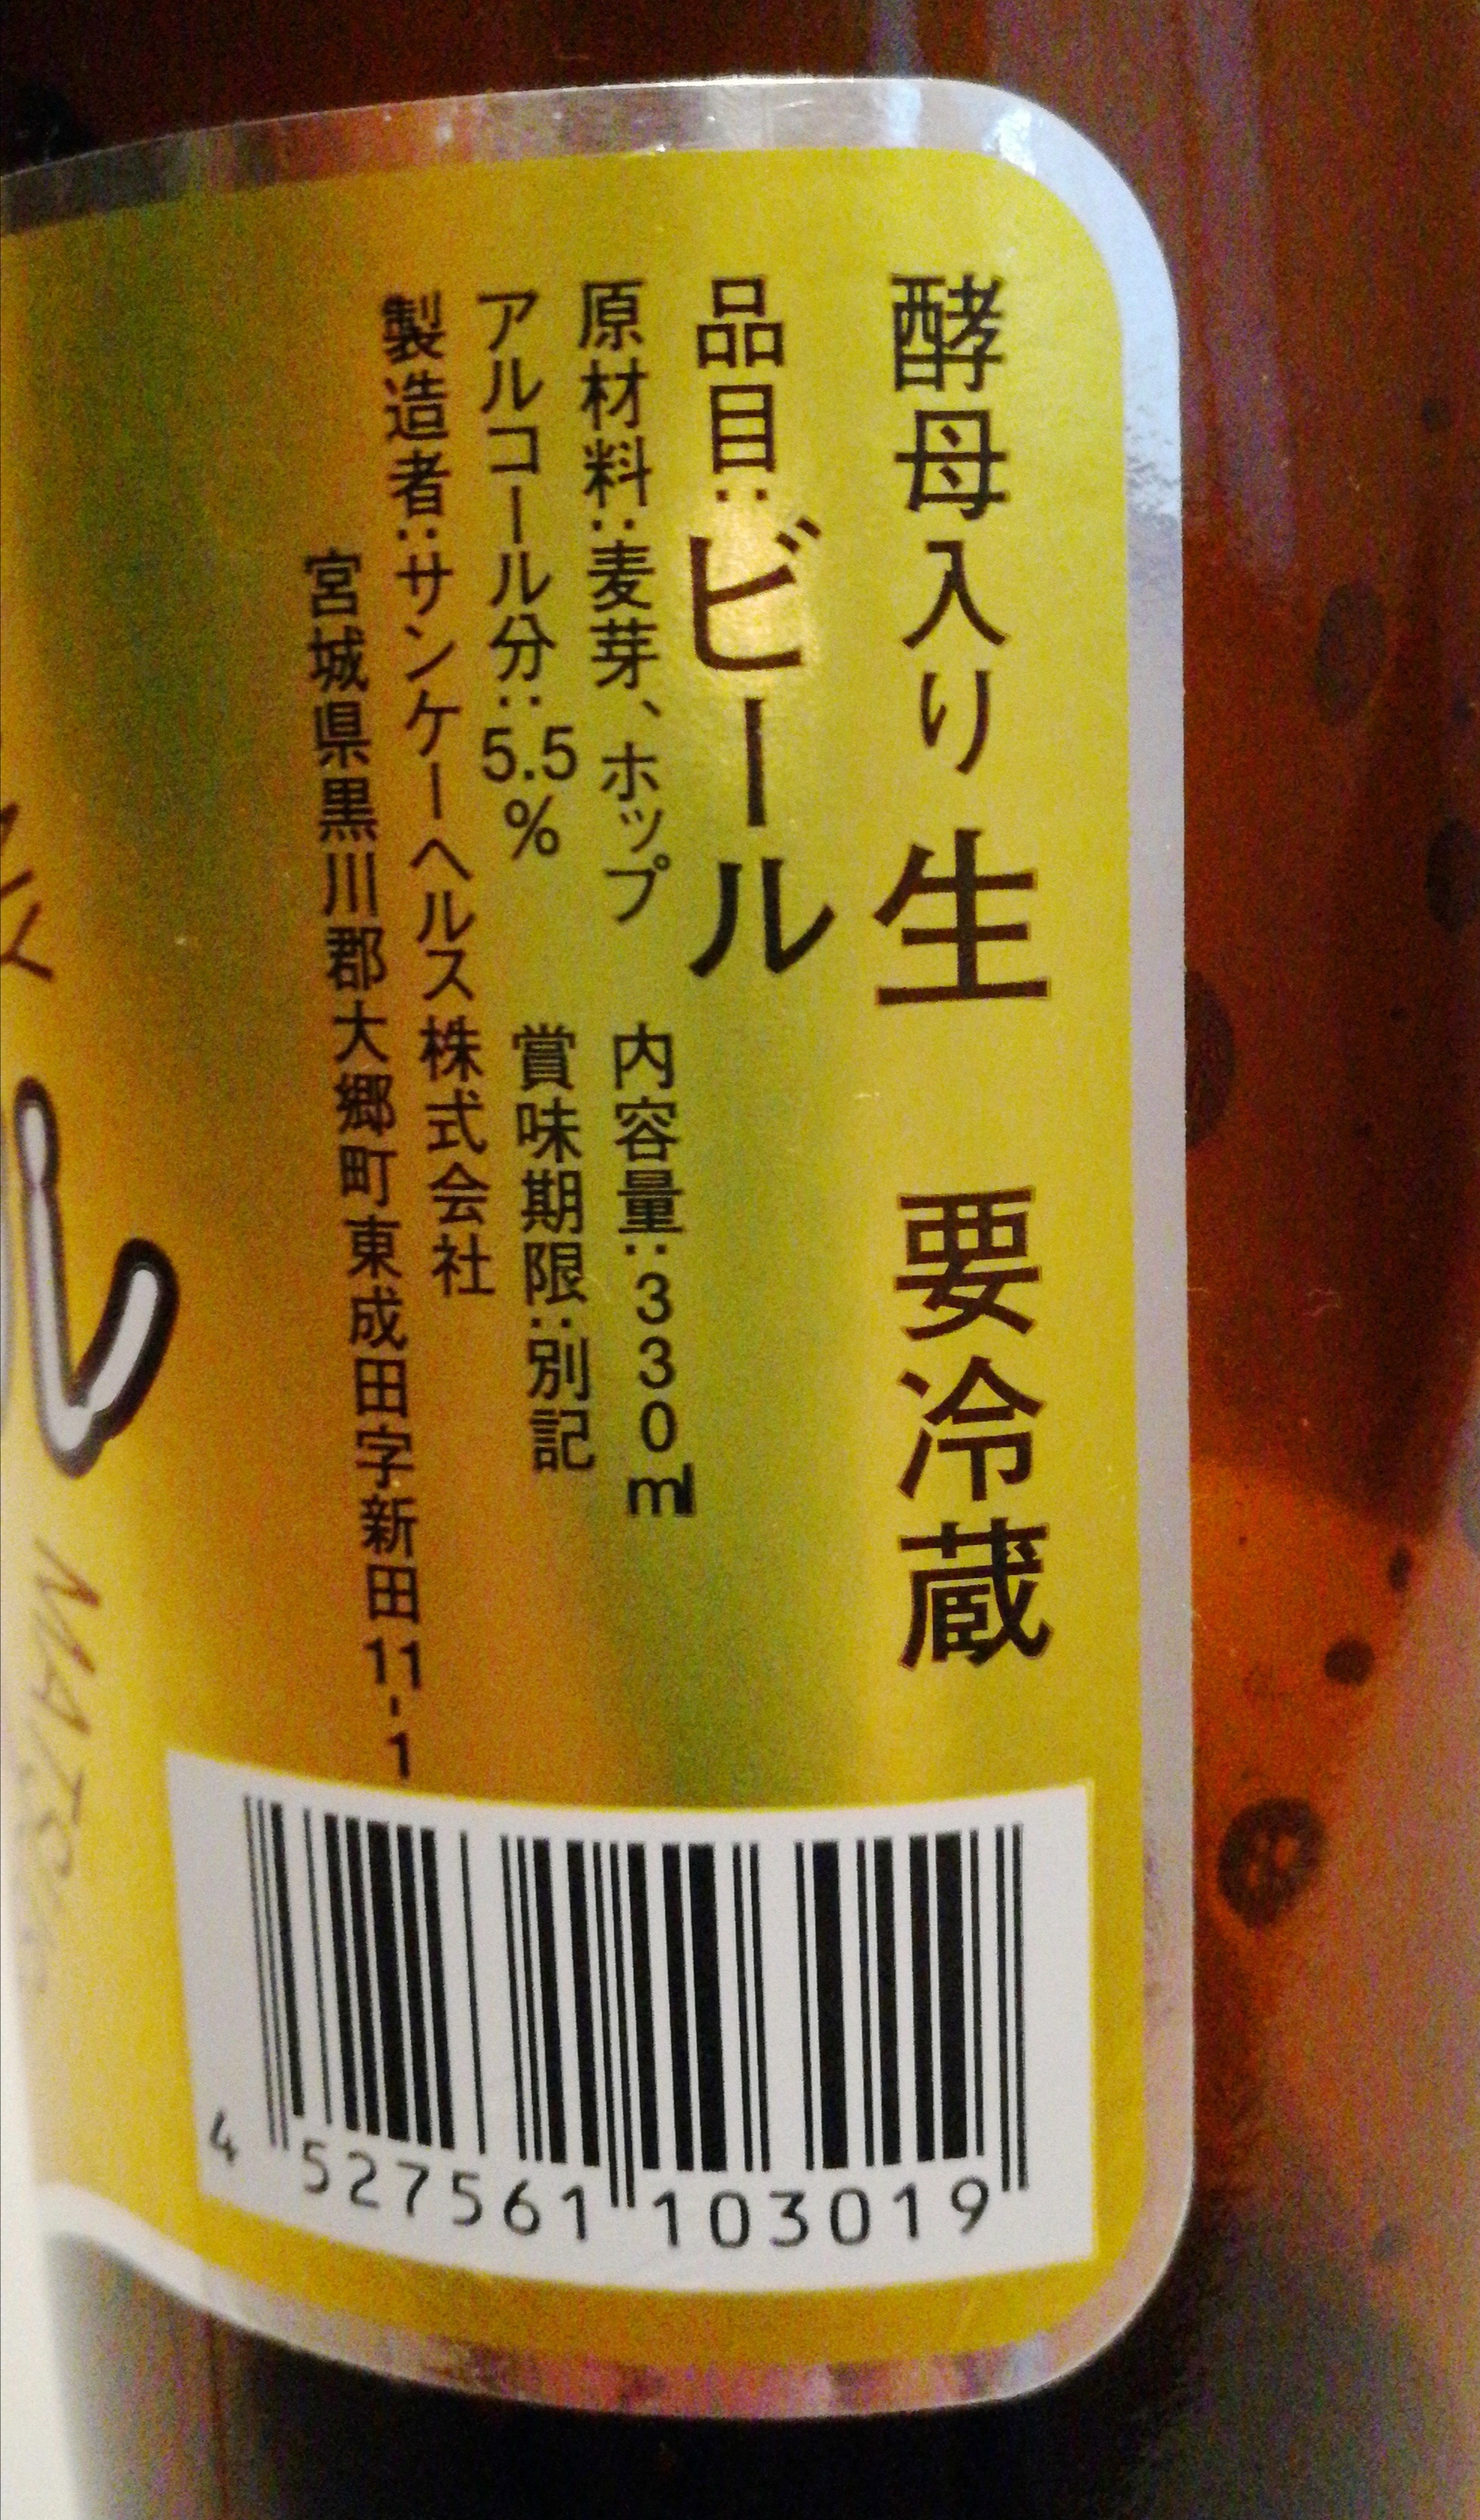 宮城 松島ビール(サンケーヘルス株式会社) Weizen